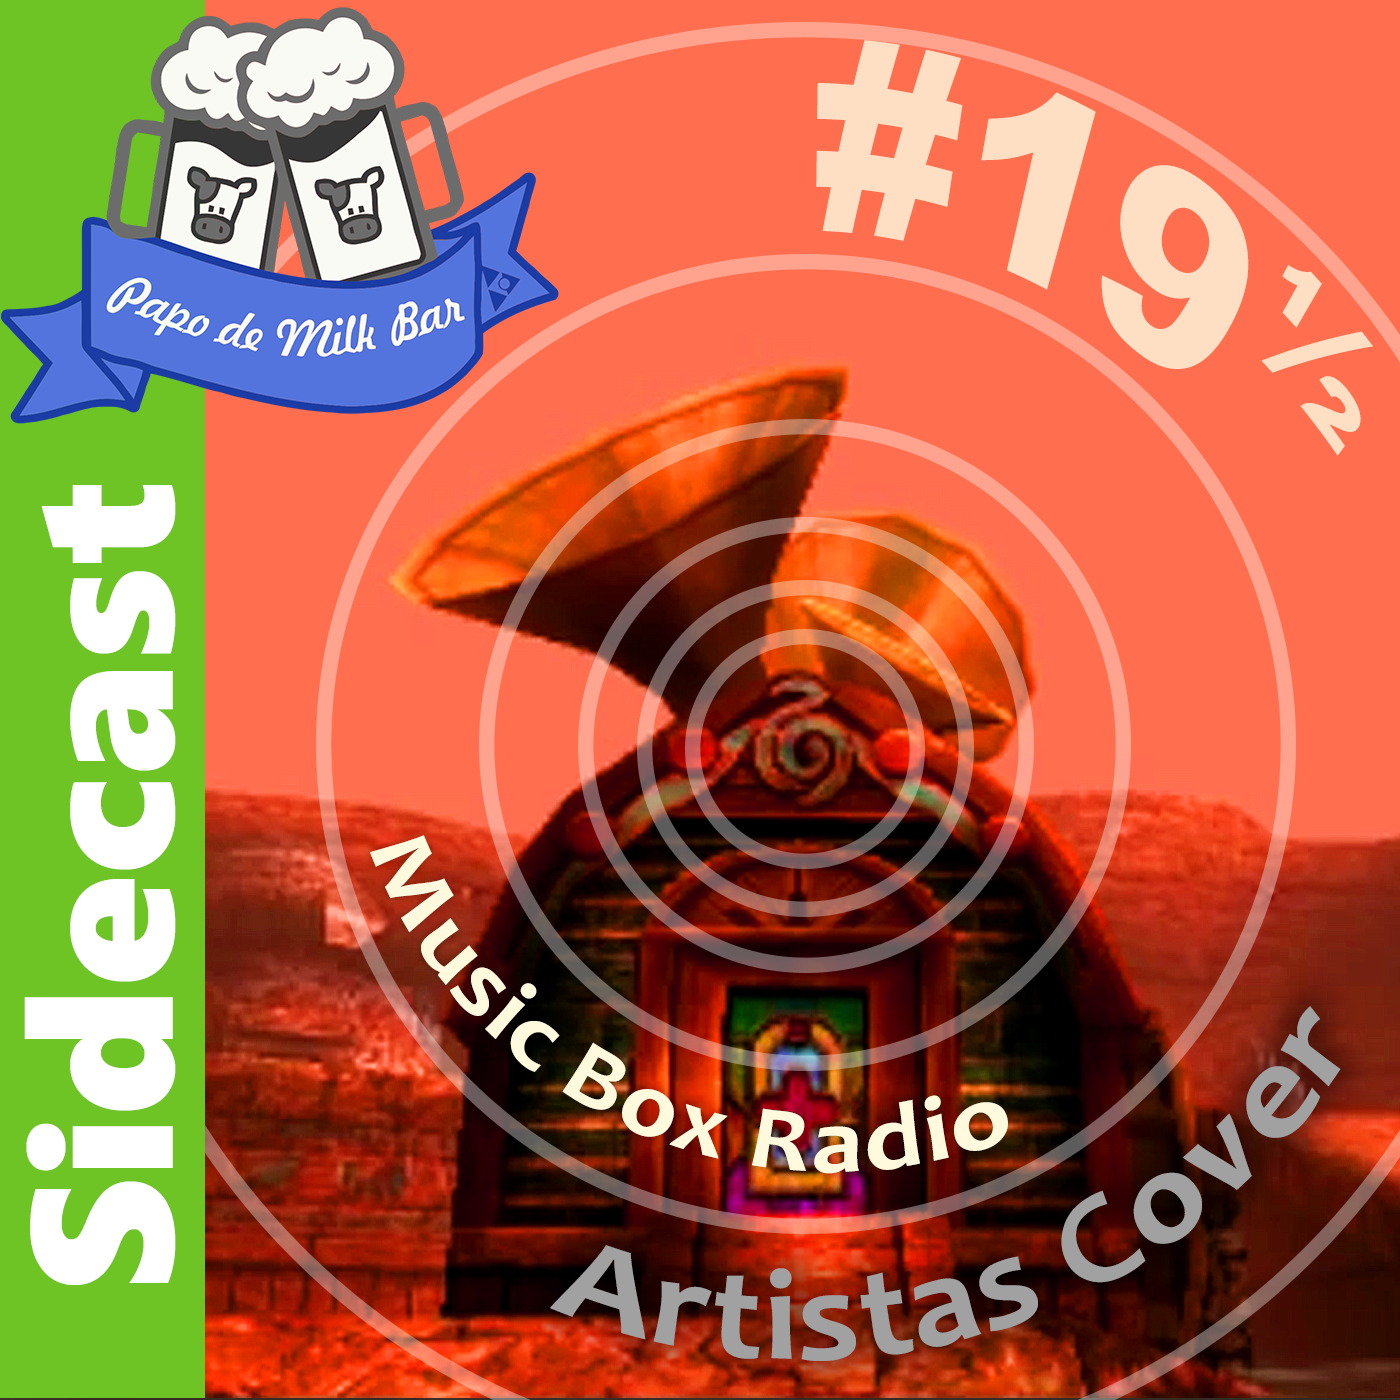 Sidecast #19½ – Music Box Radio: Artistas Cover